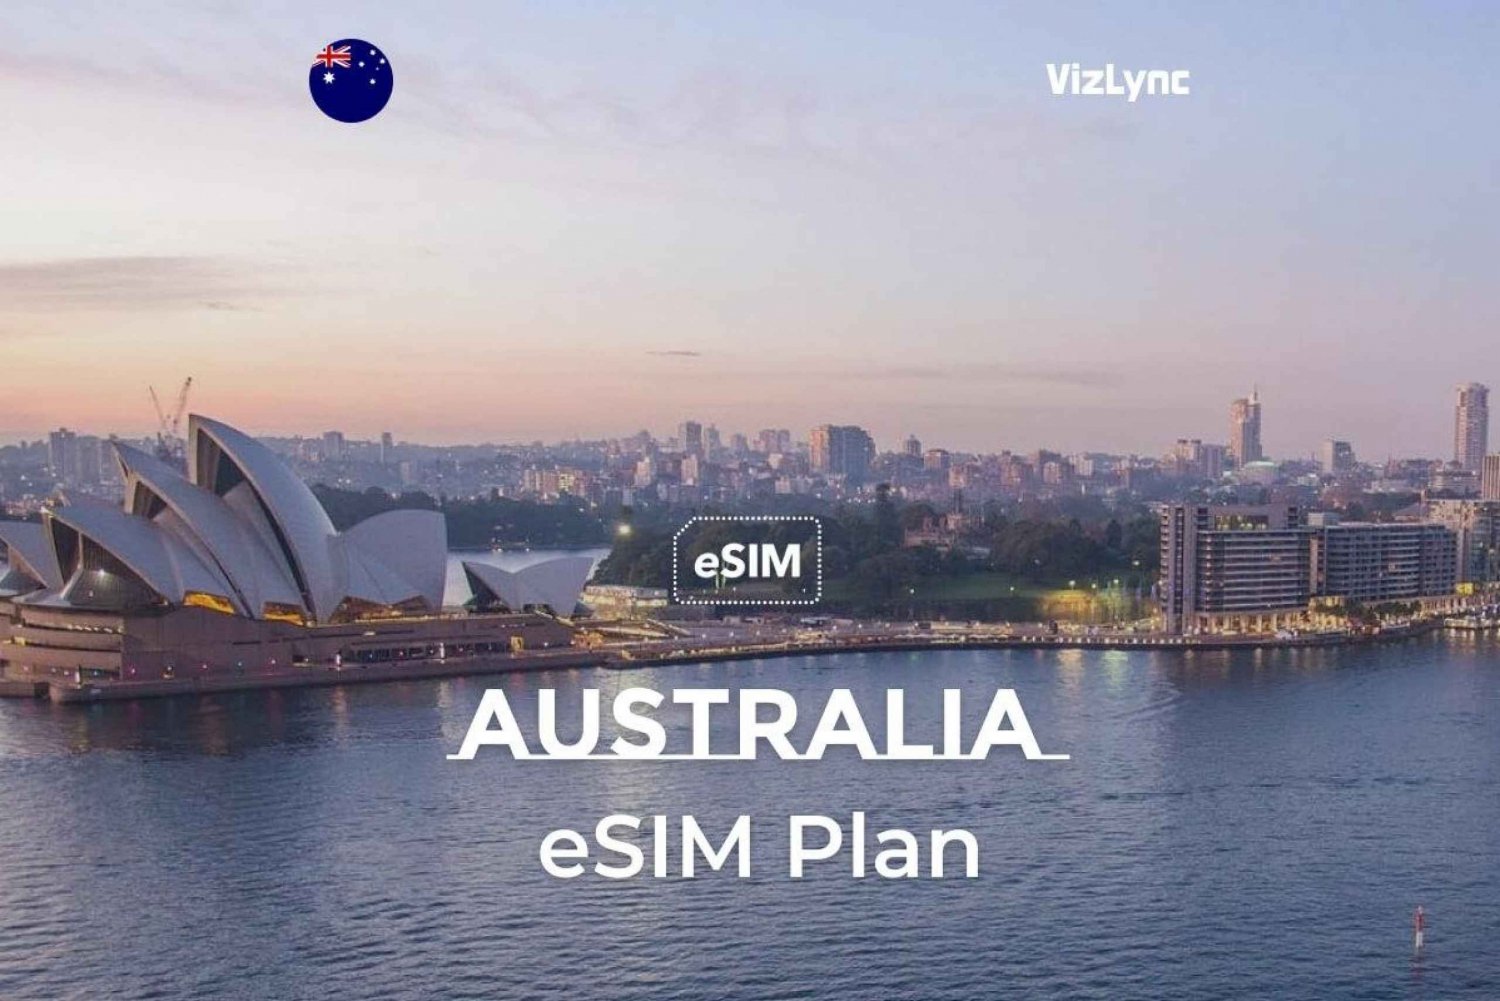 Austrália: Plano eSIM para viagens com dados móveis super rápidos